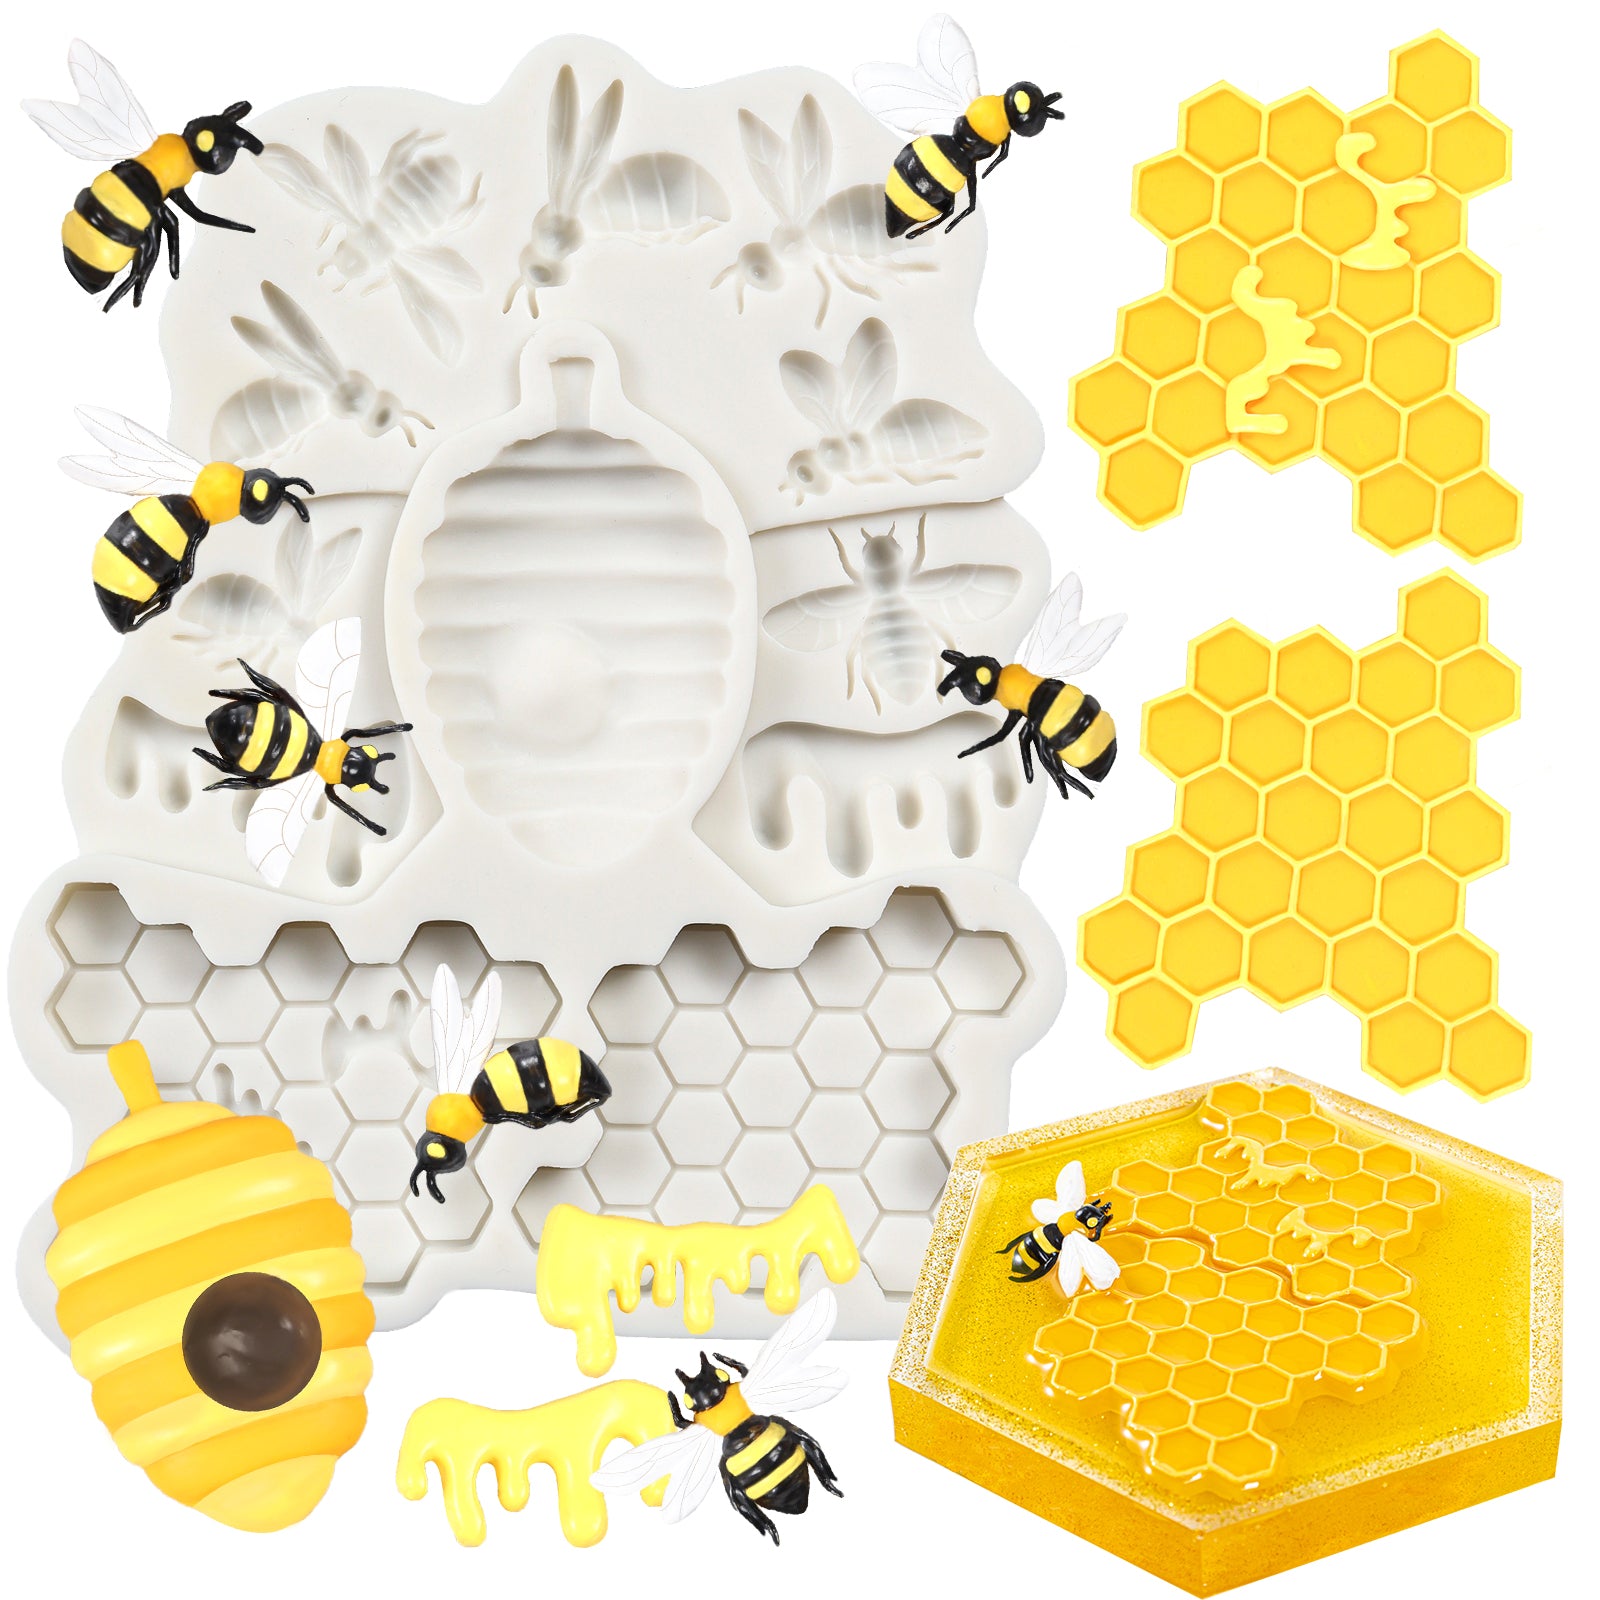  Resin Shaker Molds,uv Resin Molds, Honeycomb